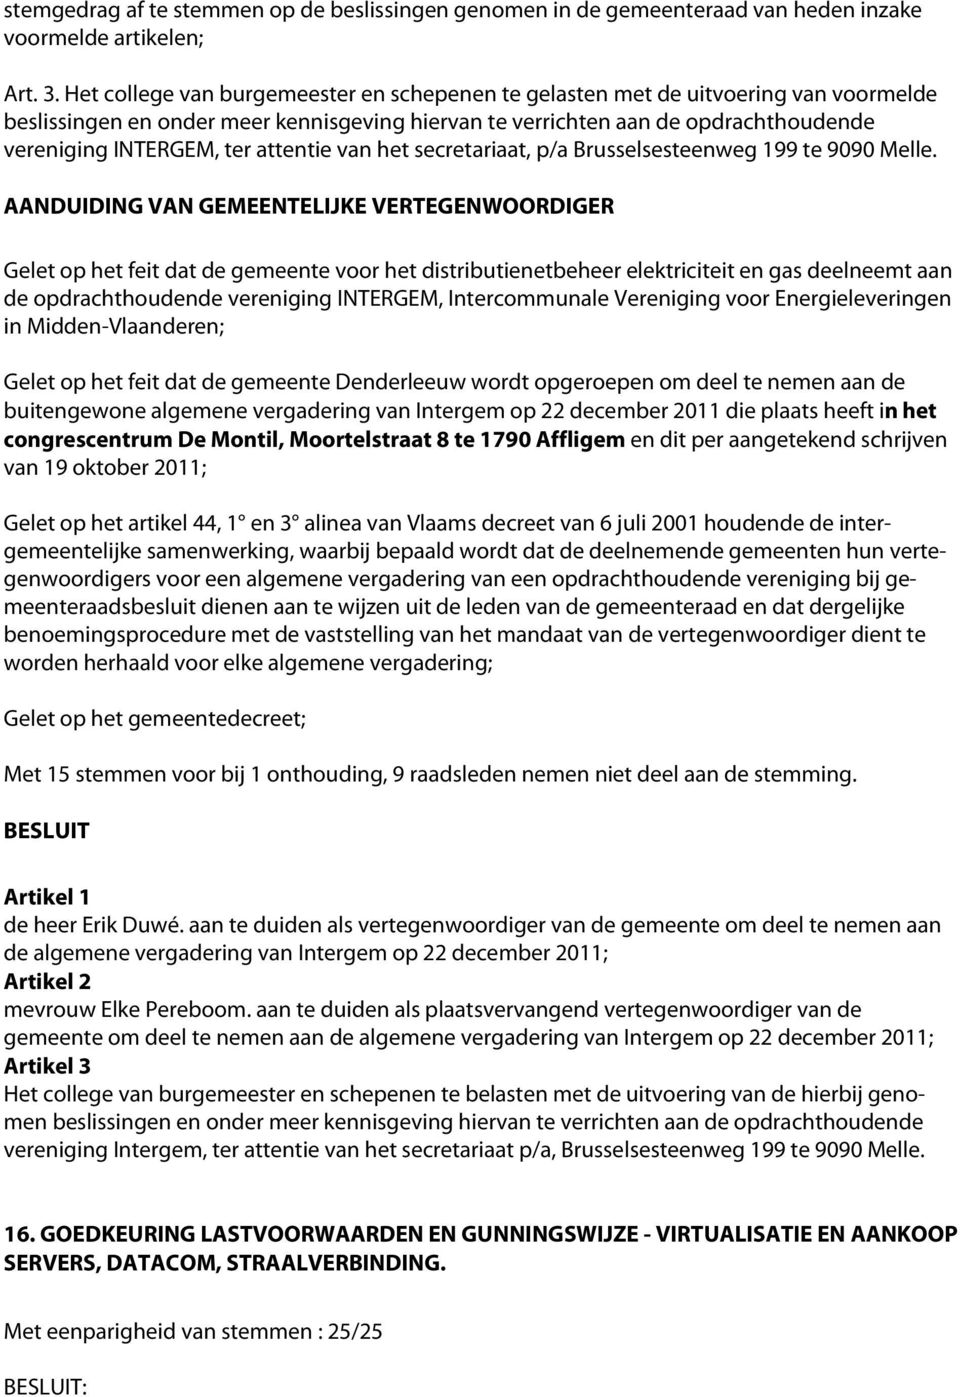 attentie van het secretariaat, p/a Brusselsesteenweg 199 te 9090 Melle.